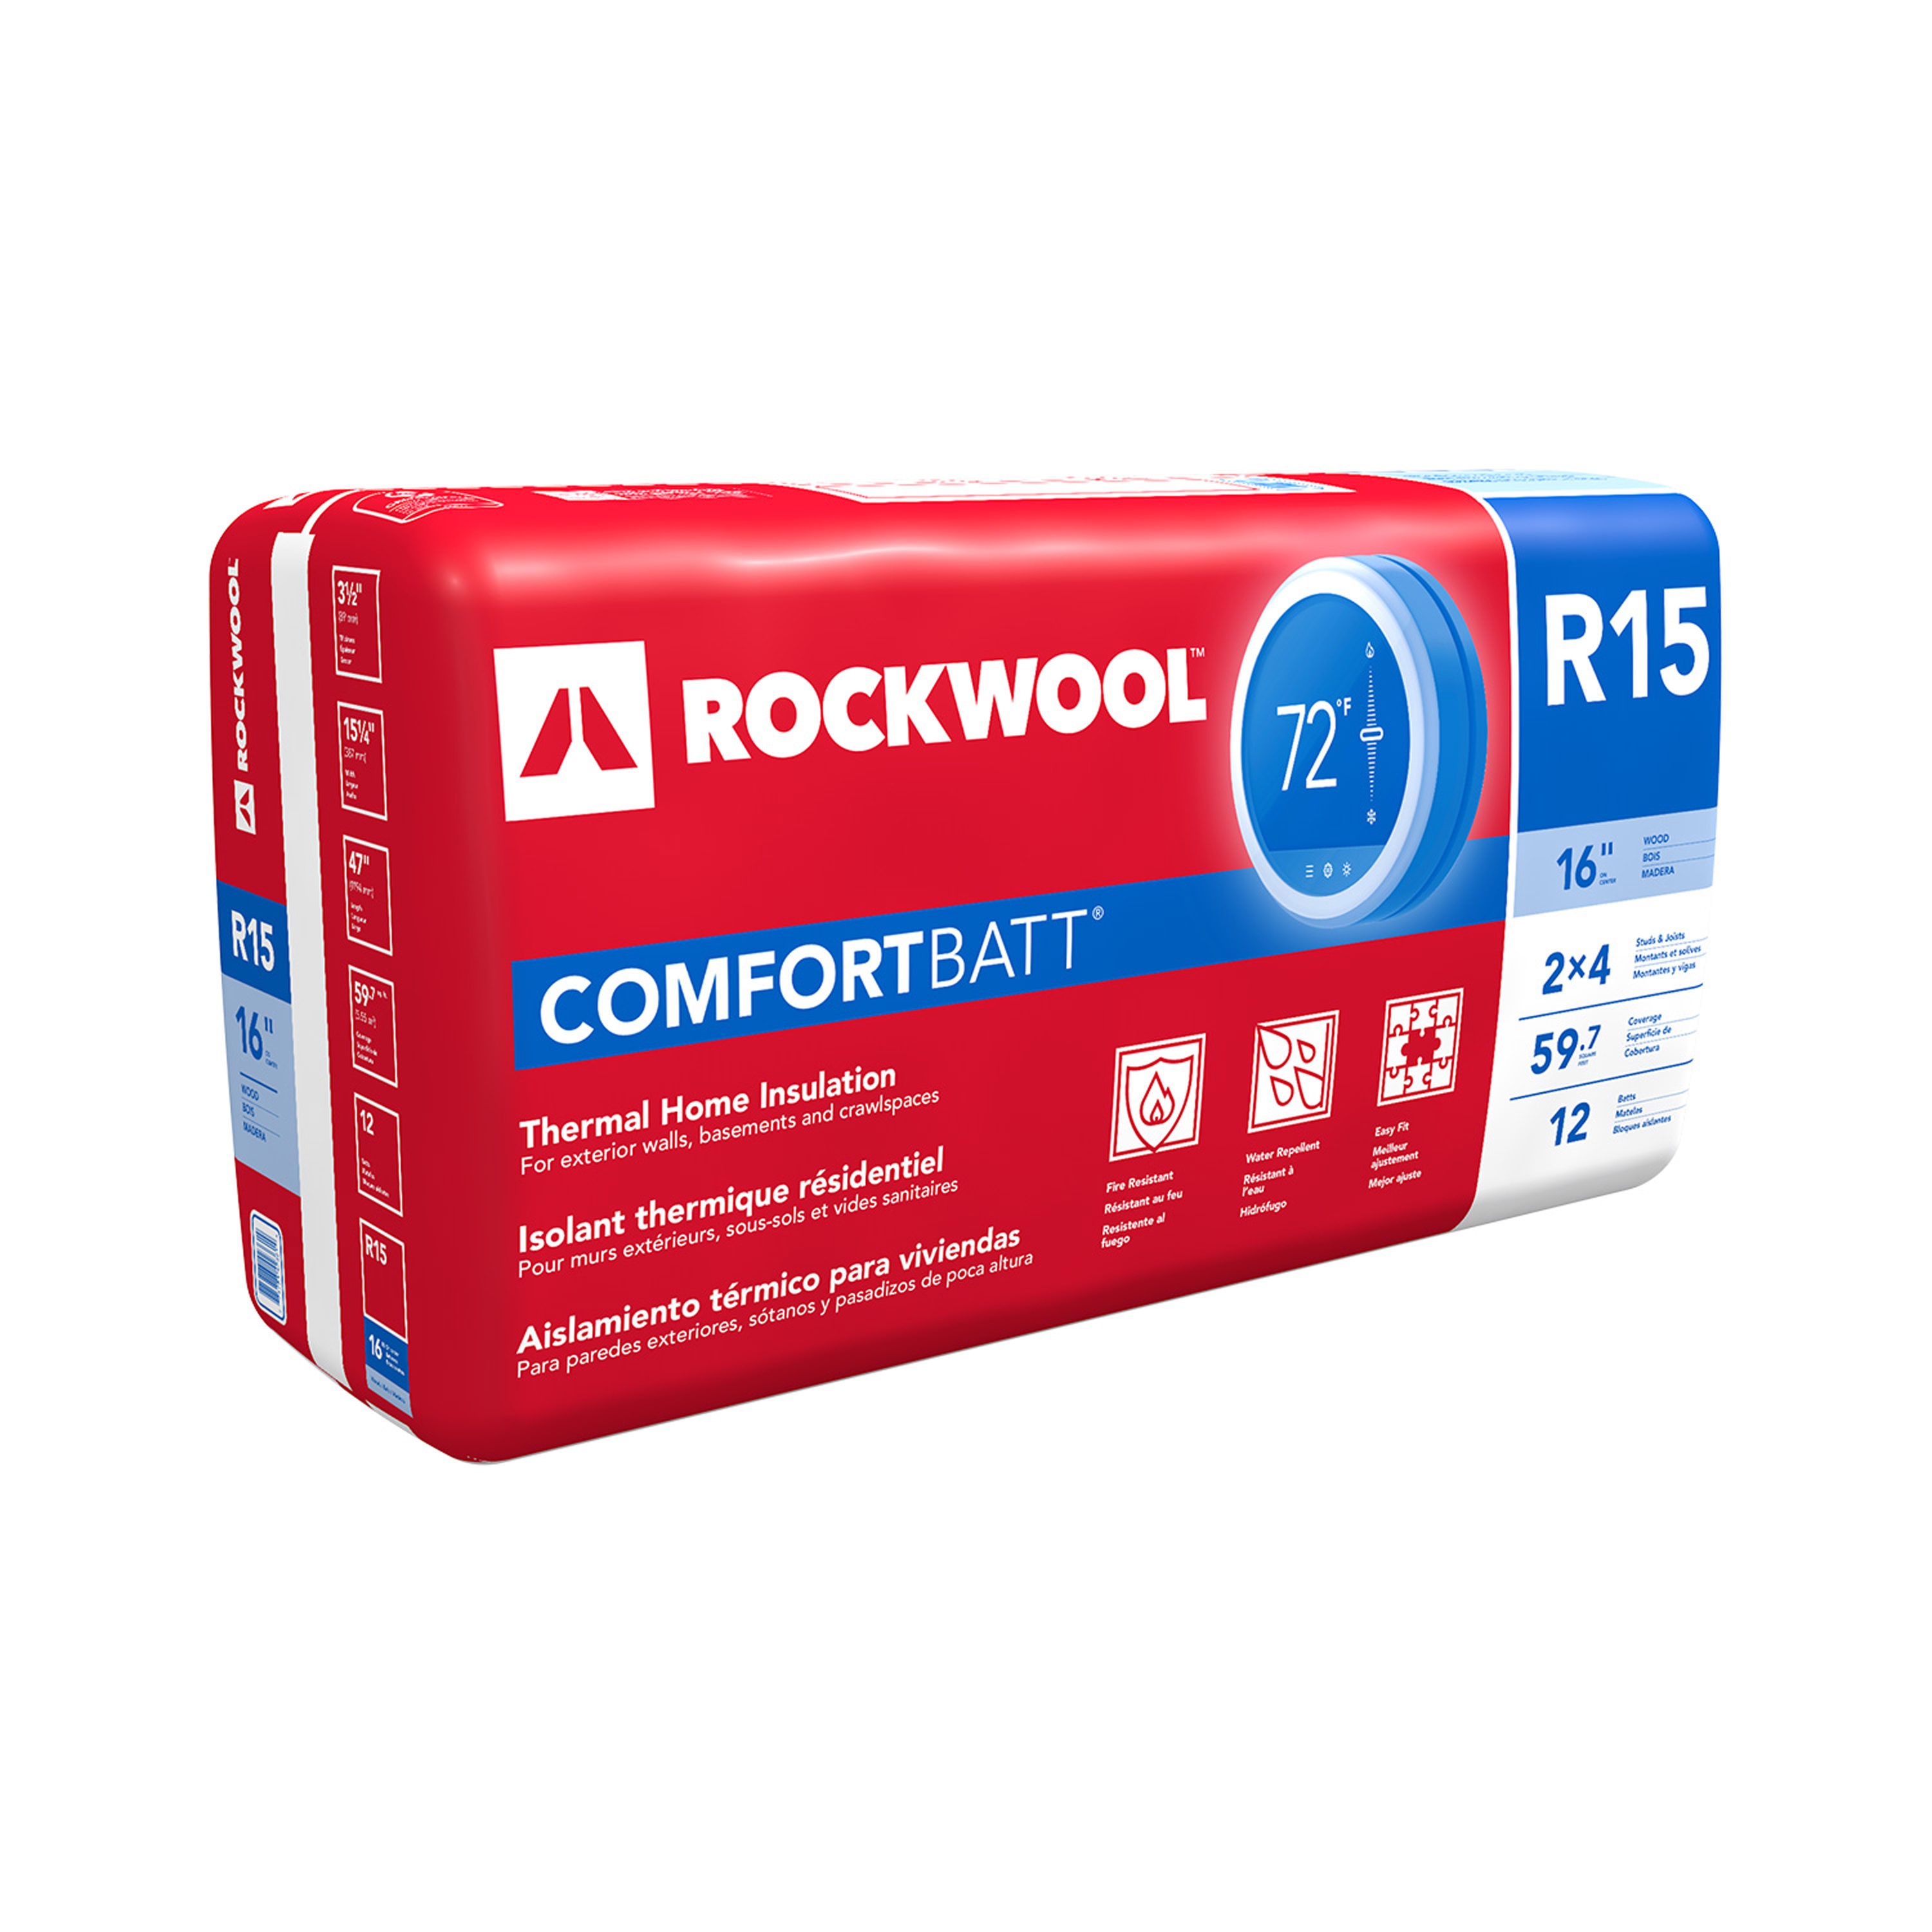 ROCKWOOL COMFORTBATT R- 15 Attic Wall 59.7-sq ft Unfaced Stone Wool Batt Insulation (15.25-in W x 47-in L) Individual Pack 1 total Piece | RXCB351525